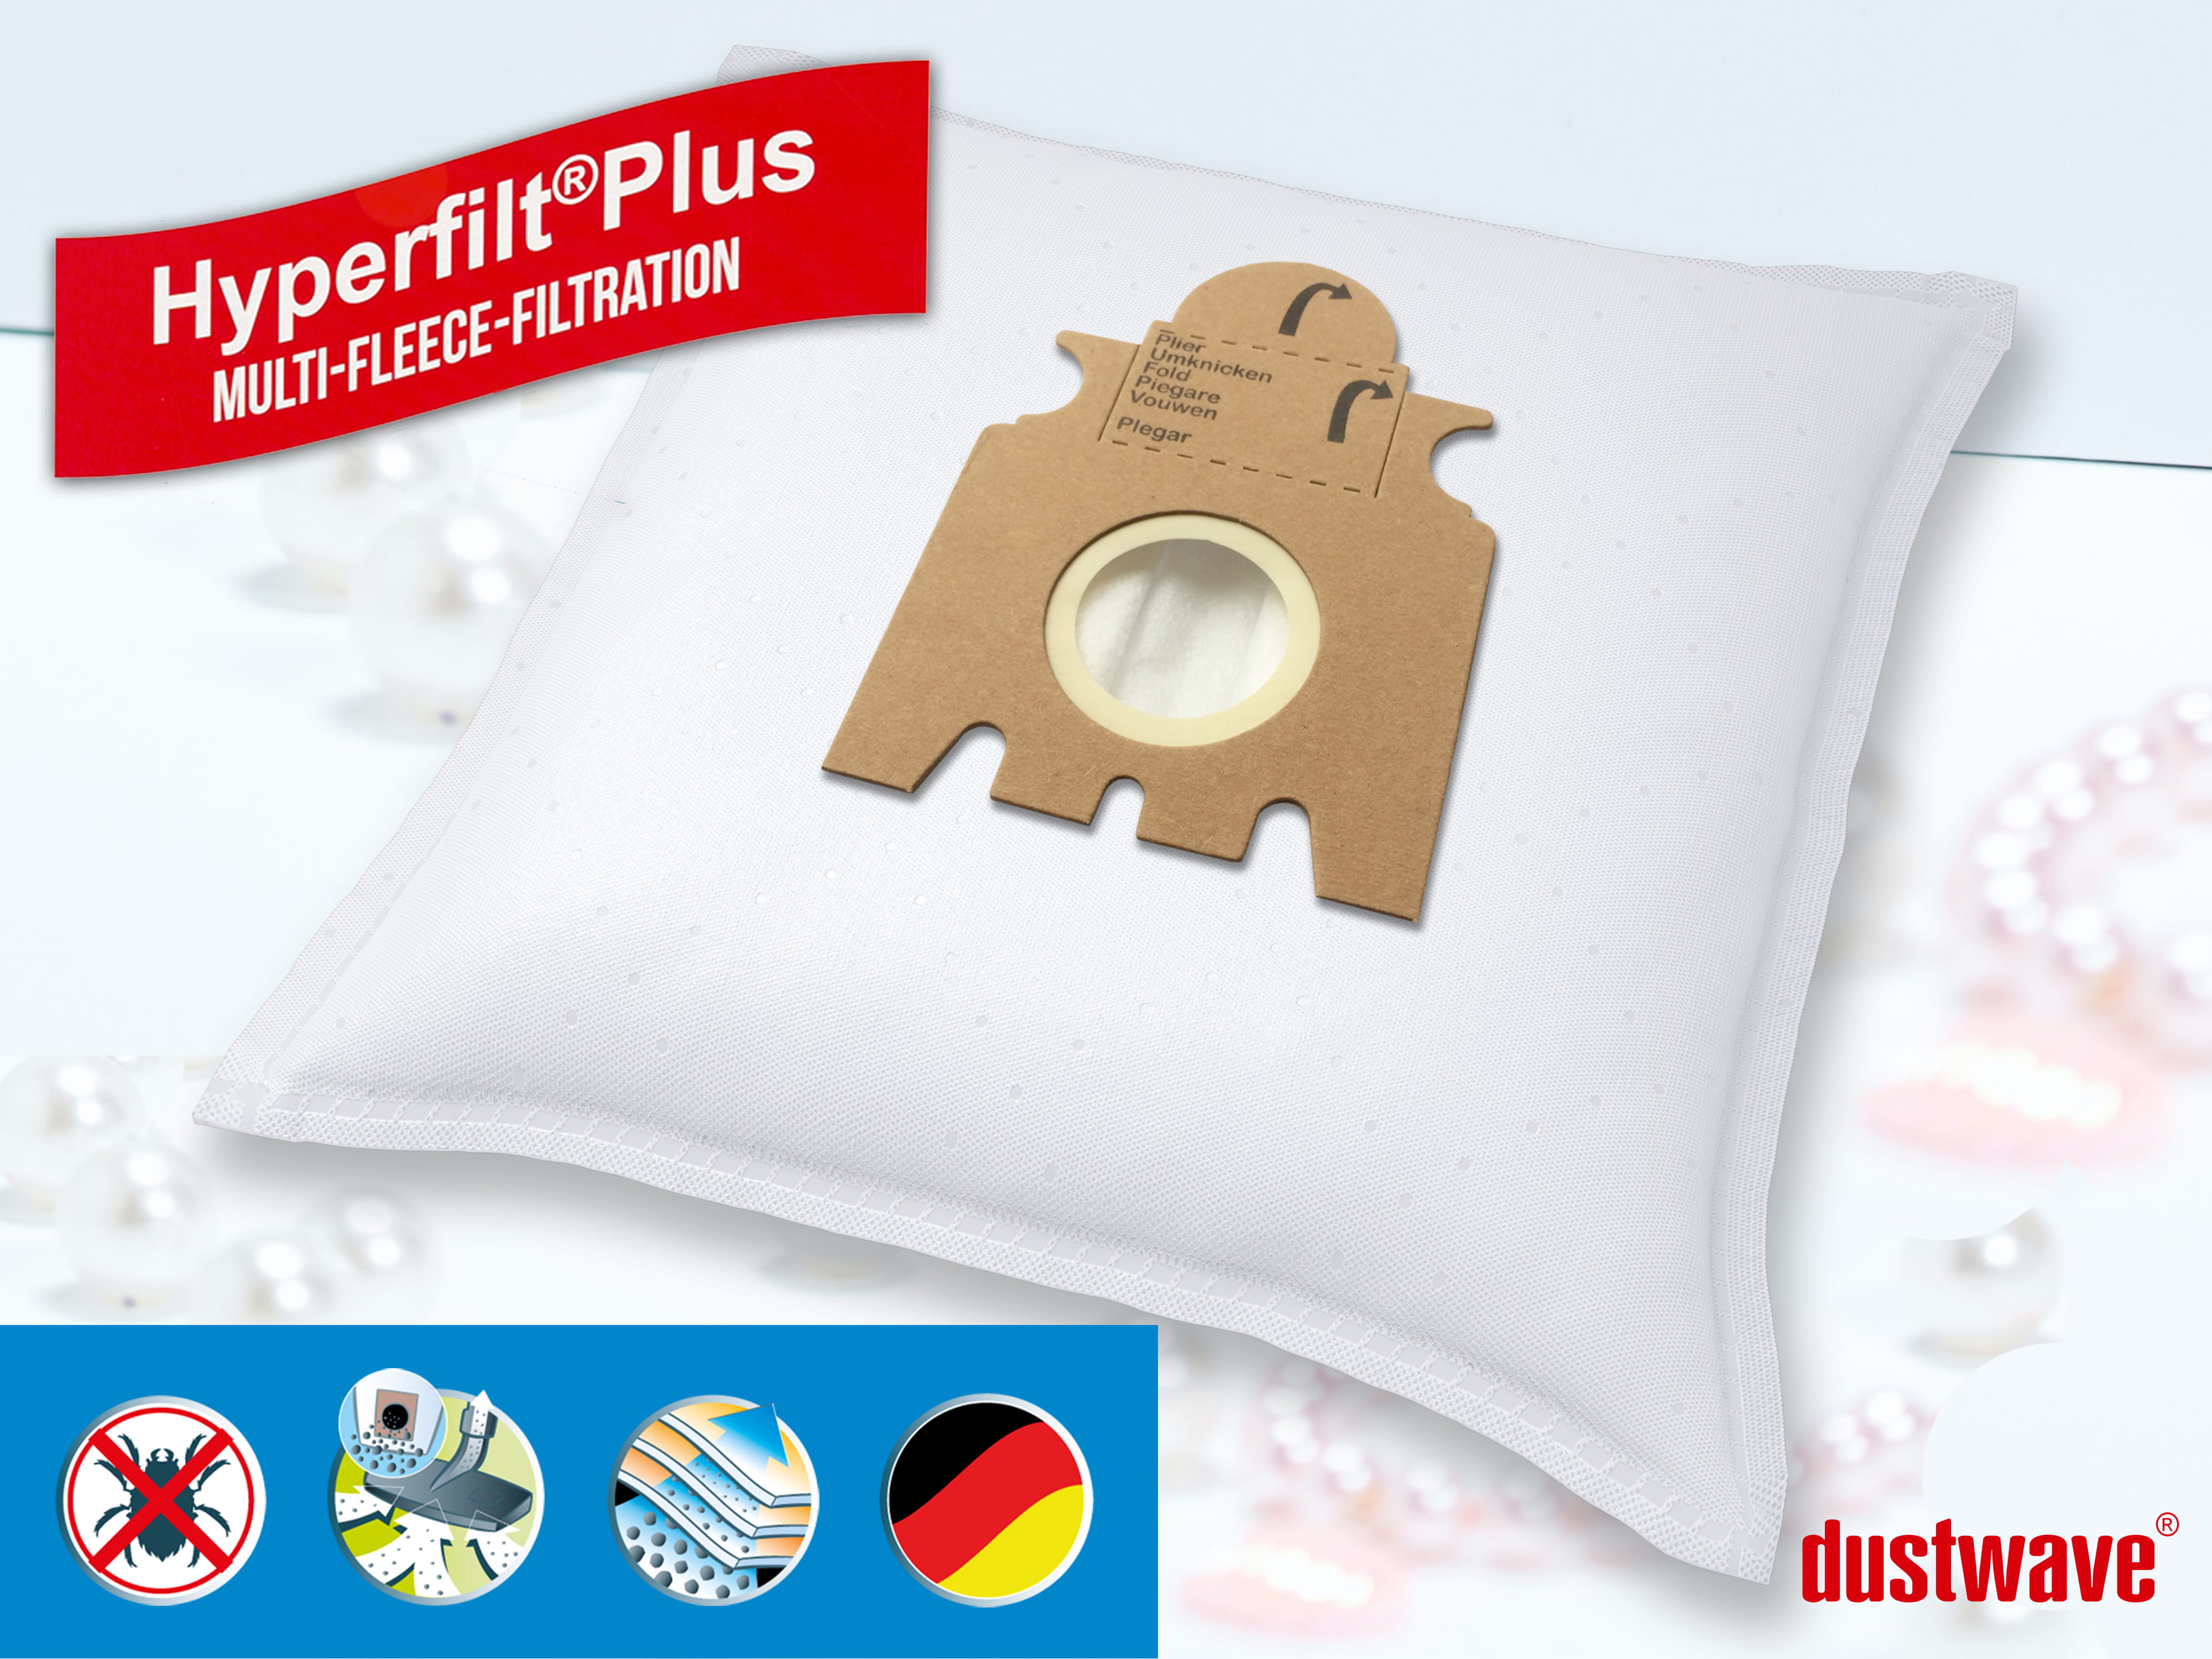 Dustwave® 5 Staubsaugerbeutel für Miele Mini 1400 Parkett - hocheffizient, mehrlagiges Mikrovlies mit Hygieneverschluss - Made in Germany